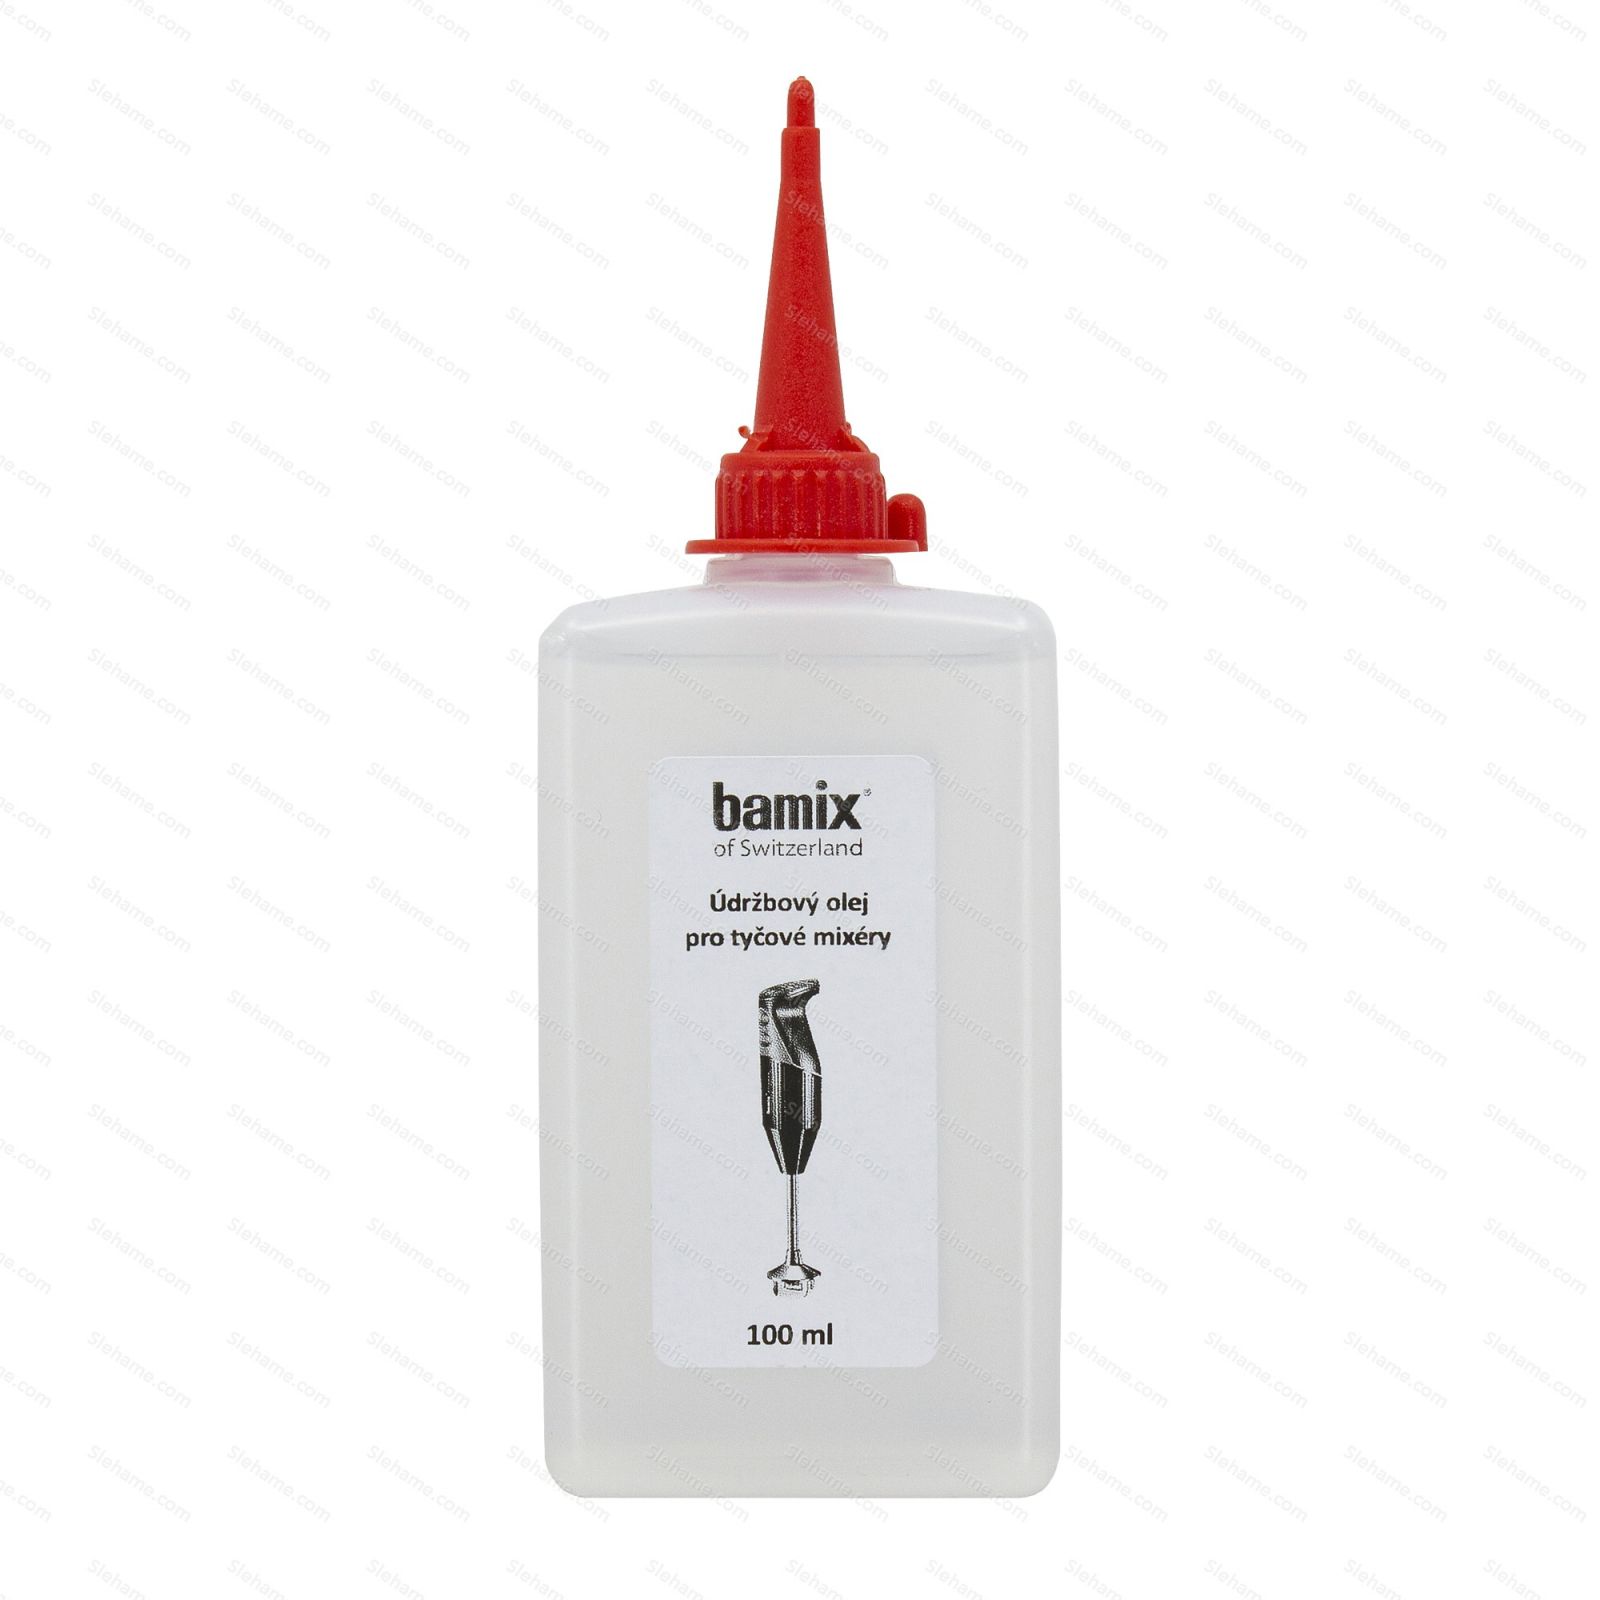 Maintenance oil for stick blenders Bamix 100 ml - main view